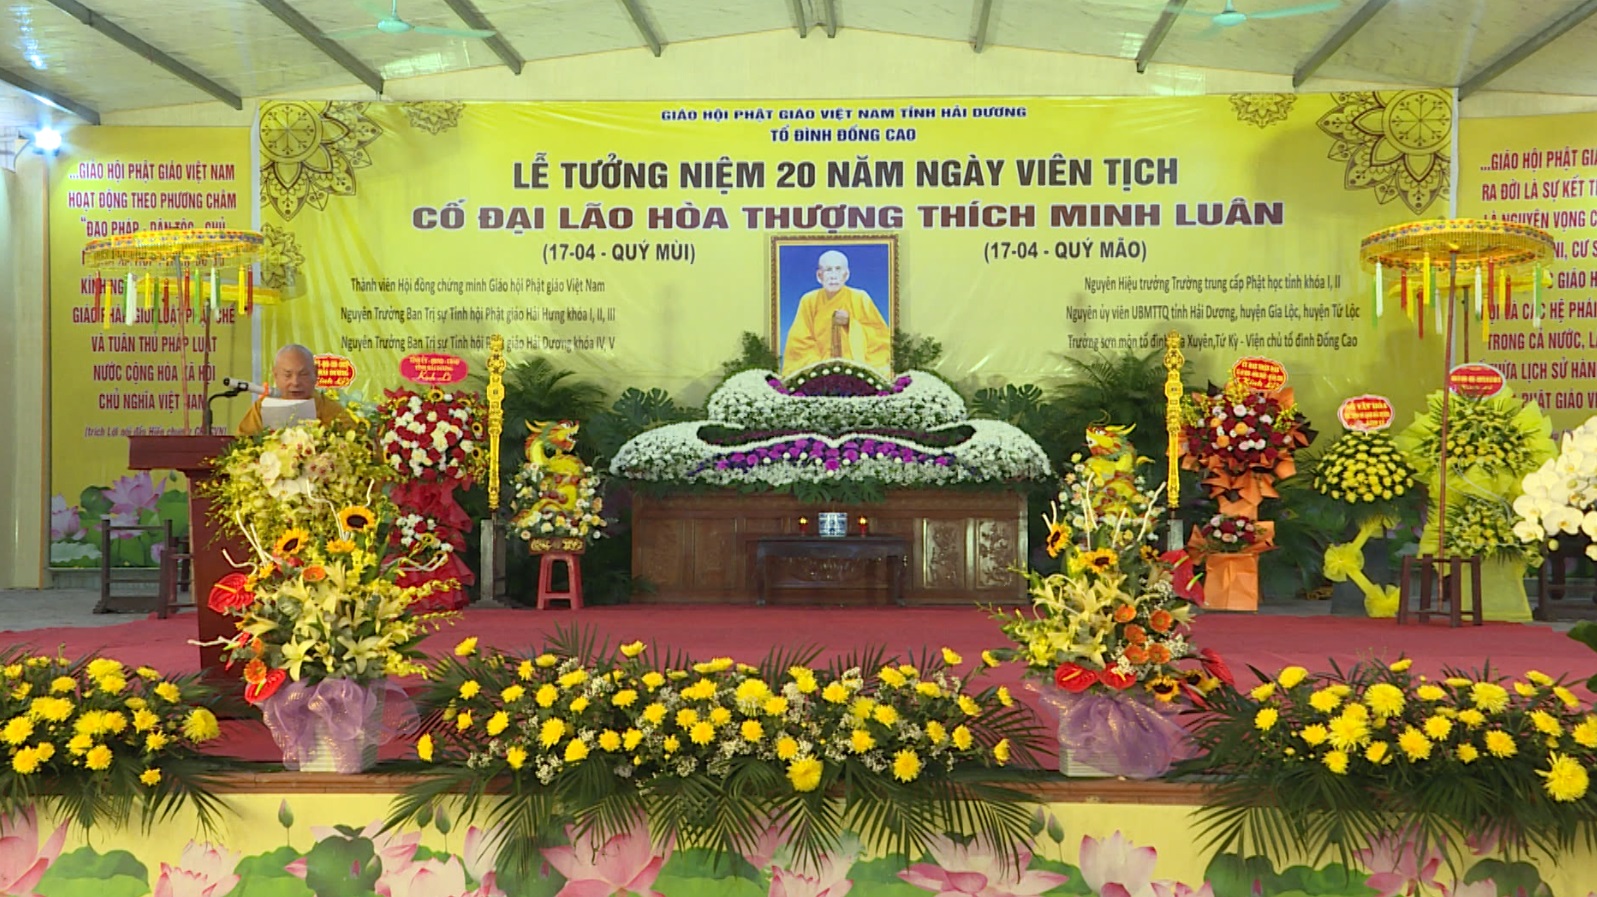 Lễ tưởng niệm 20 năm ngày viên tịch cố hòa thượng Thích Minh Luân